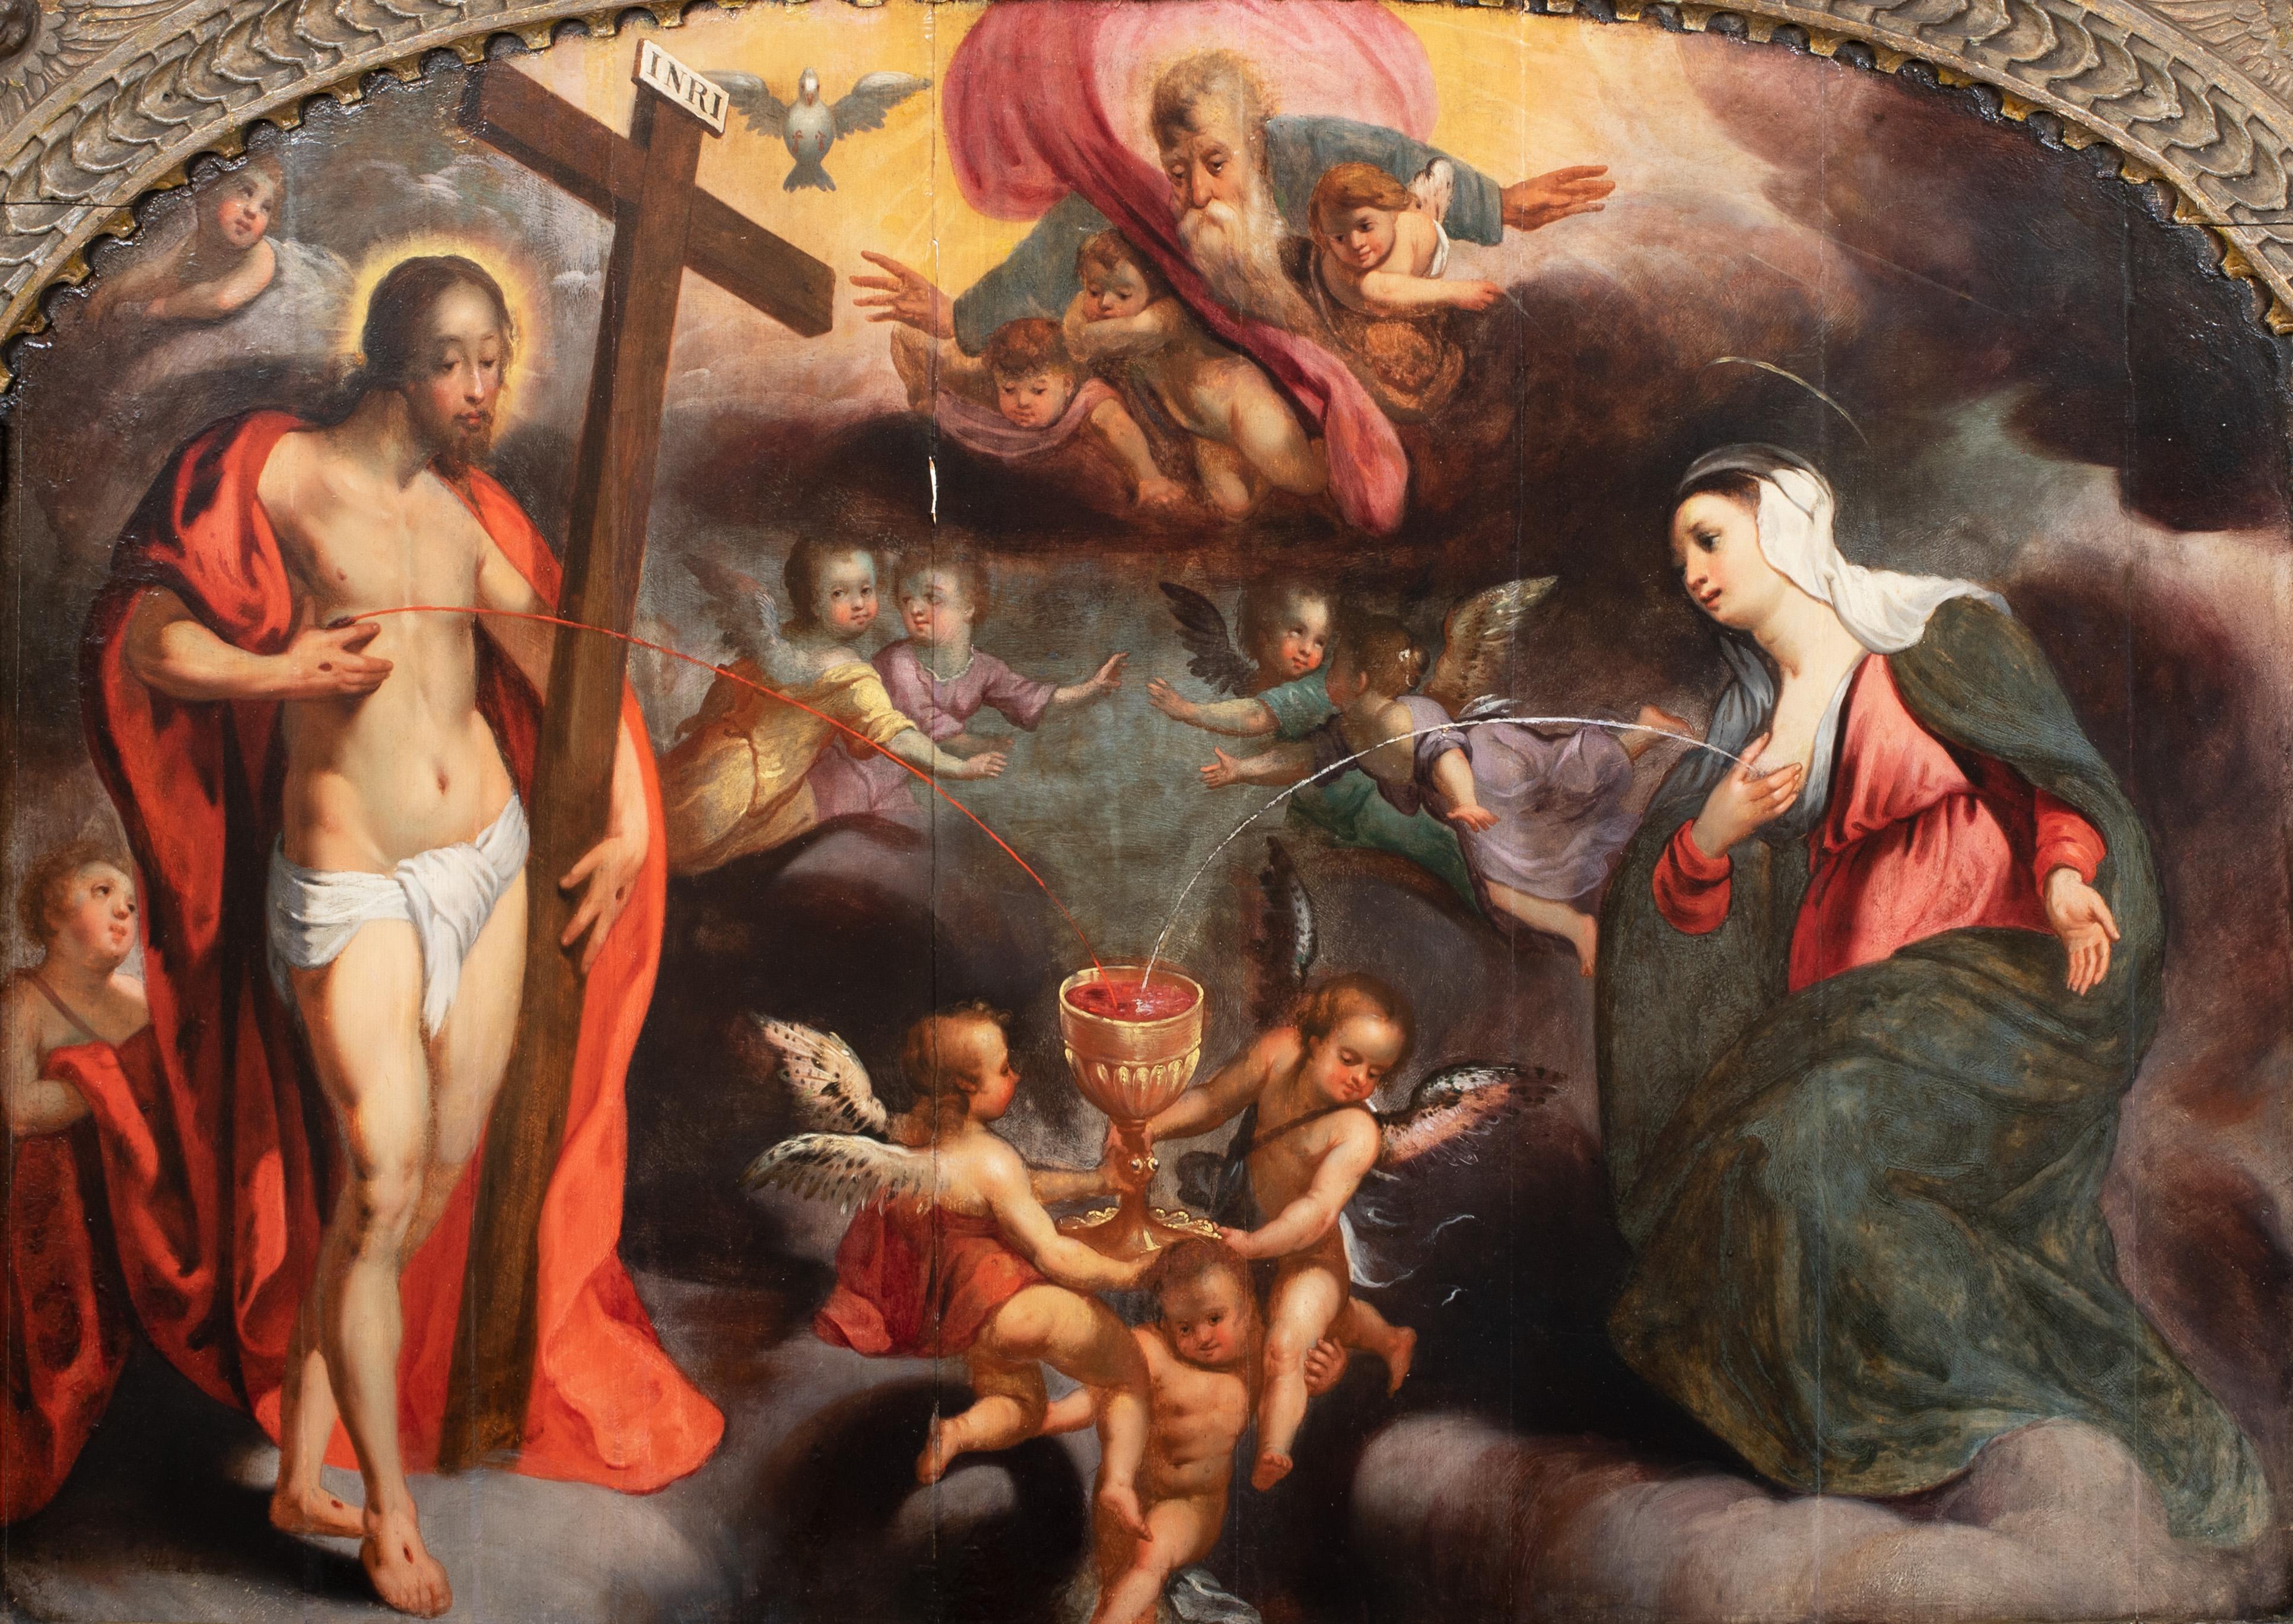 Le sang du Christ, le lait de la Vierge, XVIe siècle

cercle d'Adriaen Isenbrandt (1480-1551)

Énorme représentation de vieux maître flamand du XVIe siècle représentant le sang du Christ et le lait de la Vierge, huile sur panneau. Magnifique